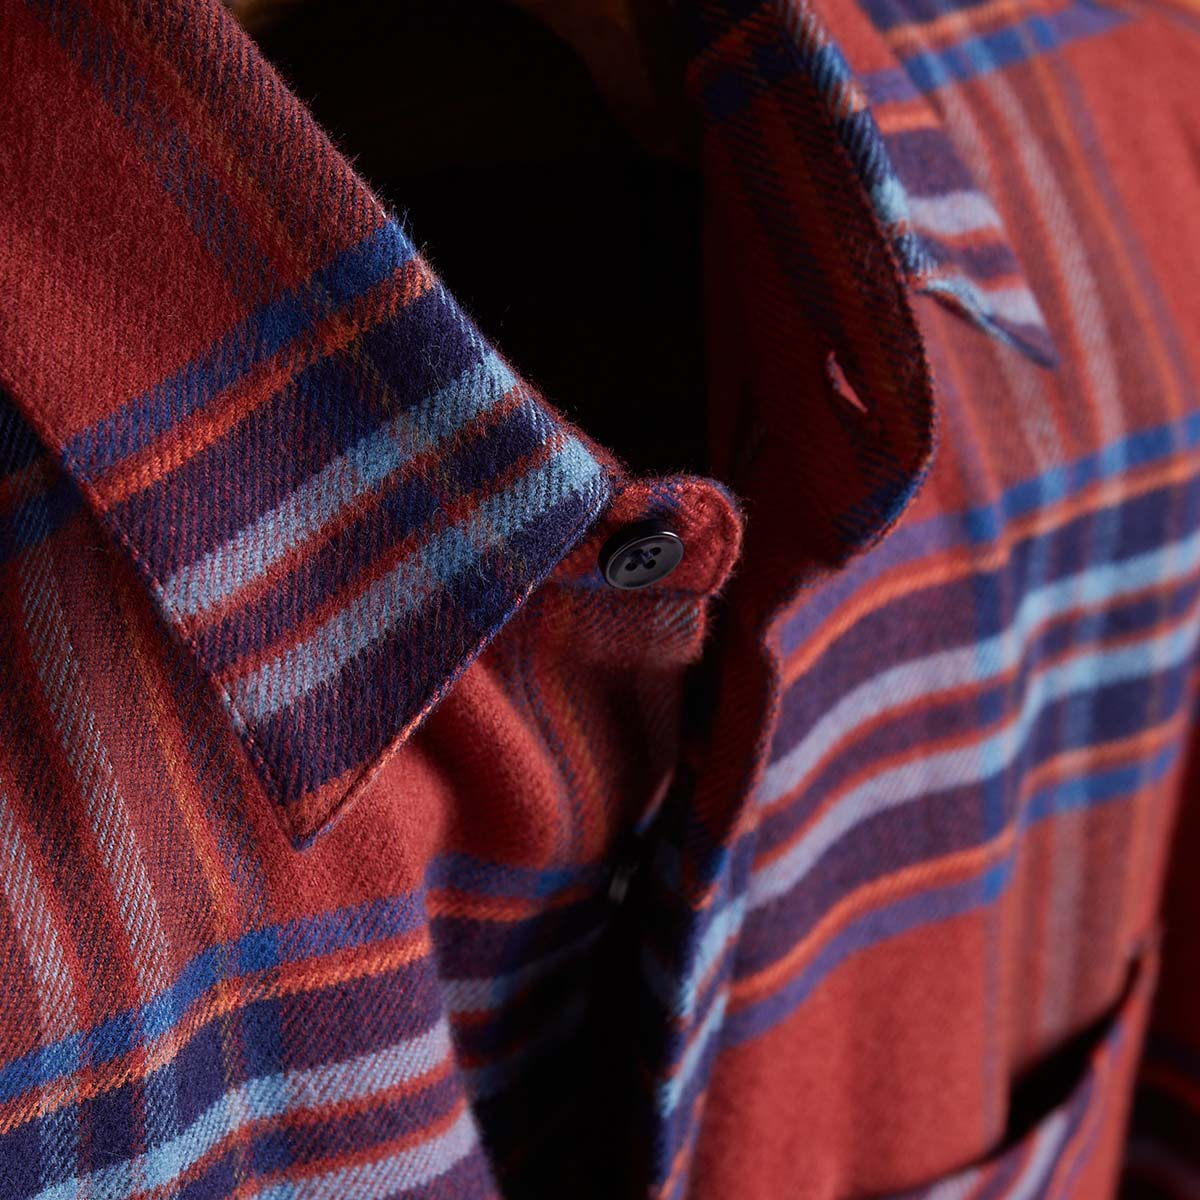 Portuguese Flannel Pau Checked Cotton-Flannel Shirt, hergestellt aus den feinsten exklusiven Stoffen